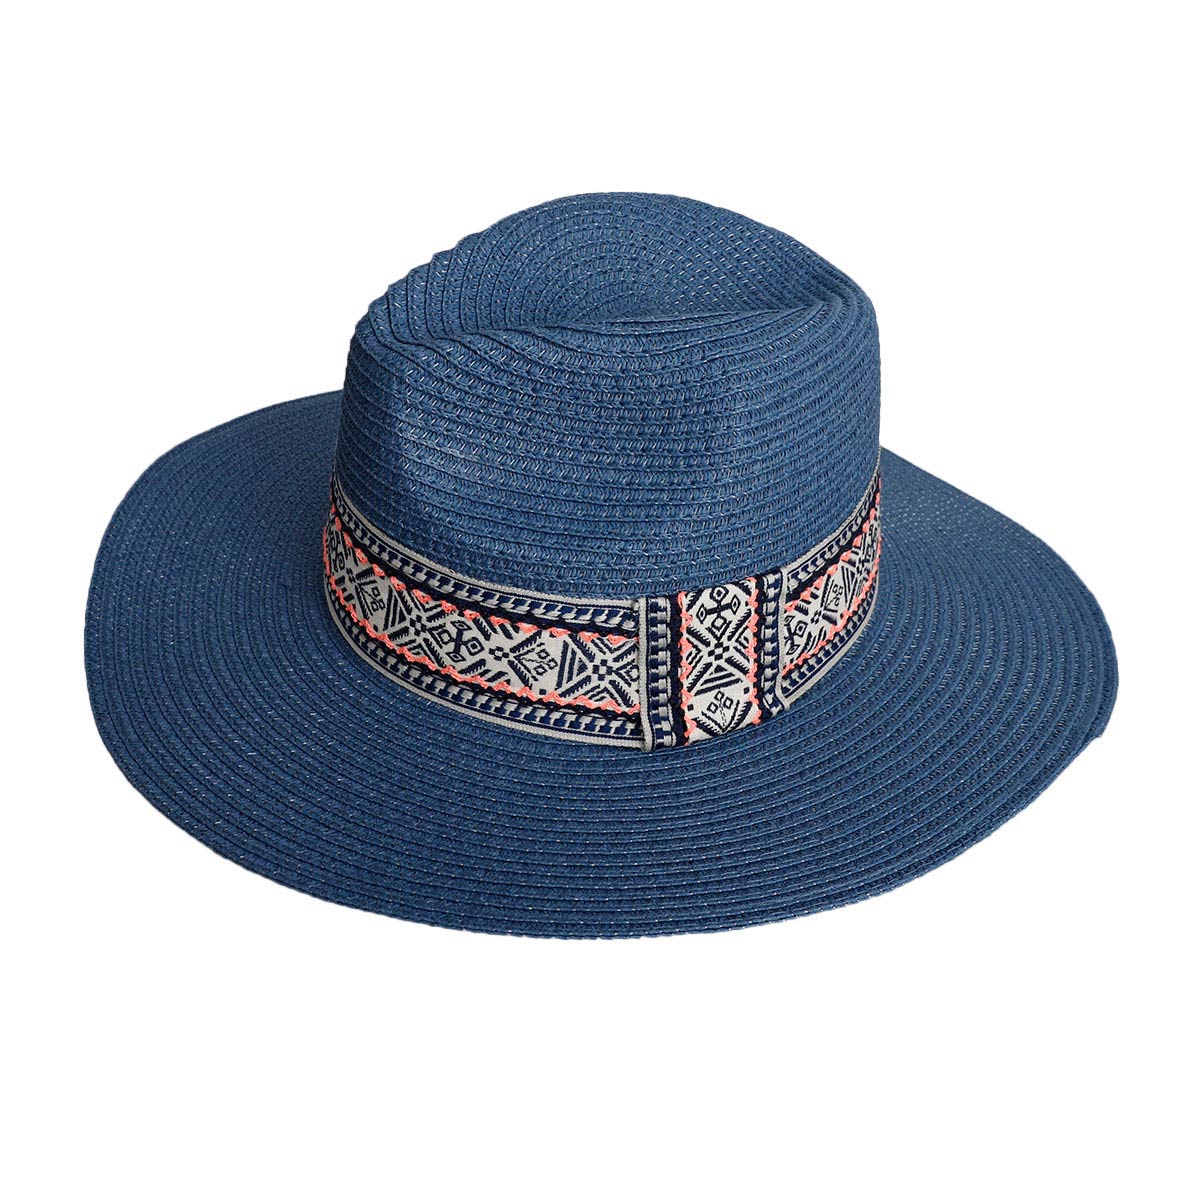 Blue Boho Navy Band Panama Hat